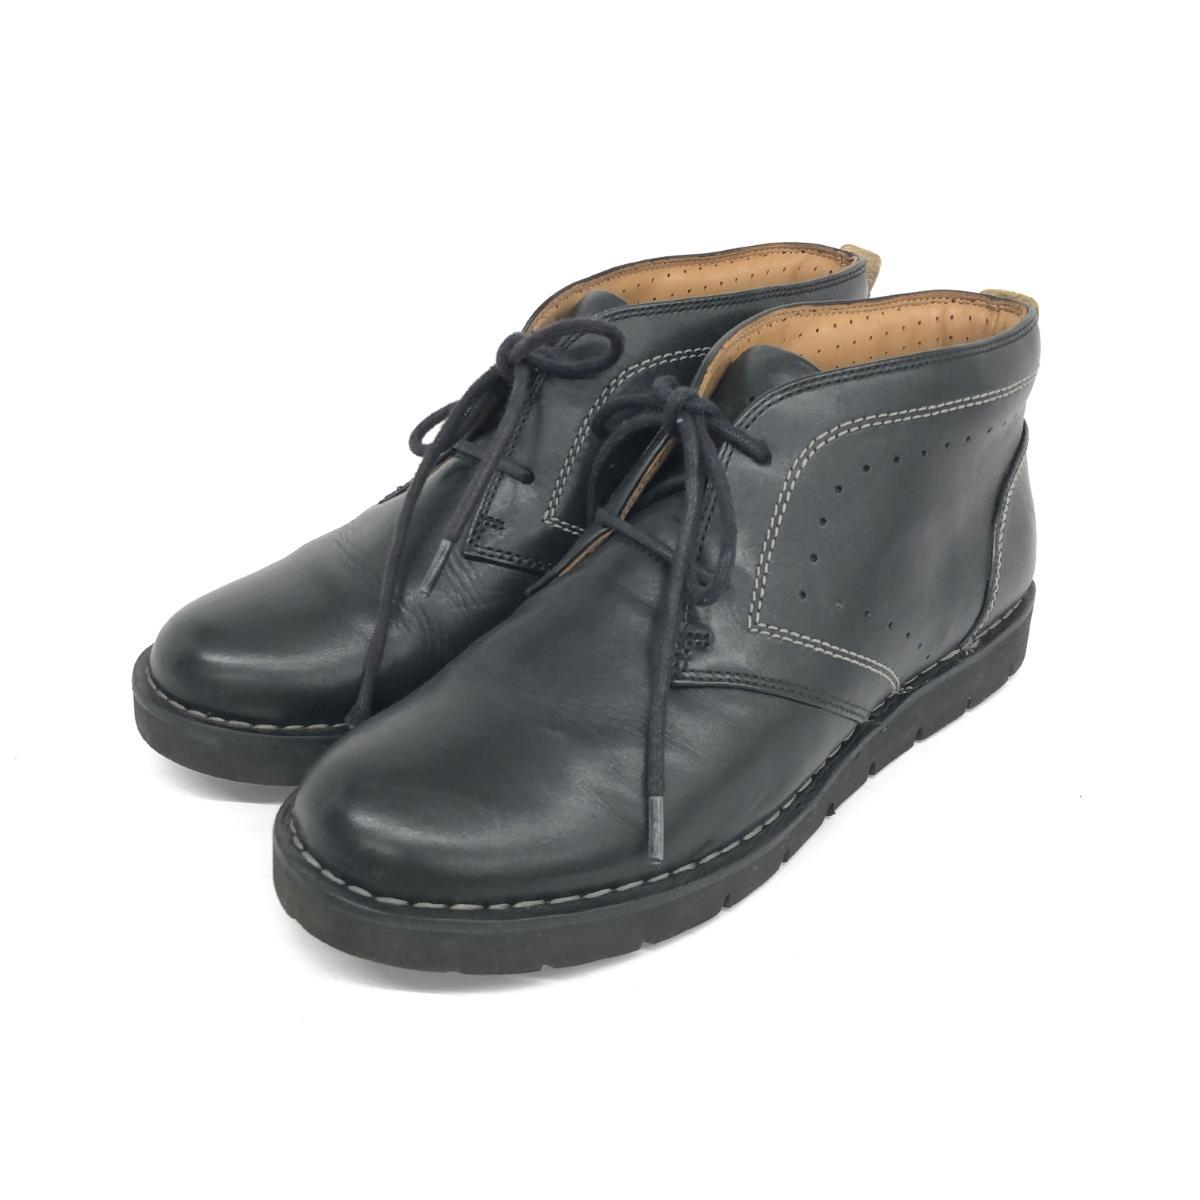 ◆Clarks クラークス ブーツ UK5.5◆ ブラック レザー レディース 靴 シューズ ブーティー boots_画像1